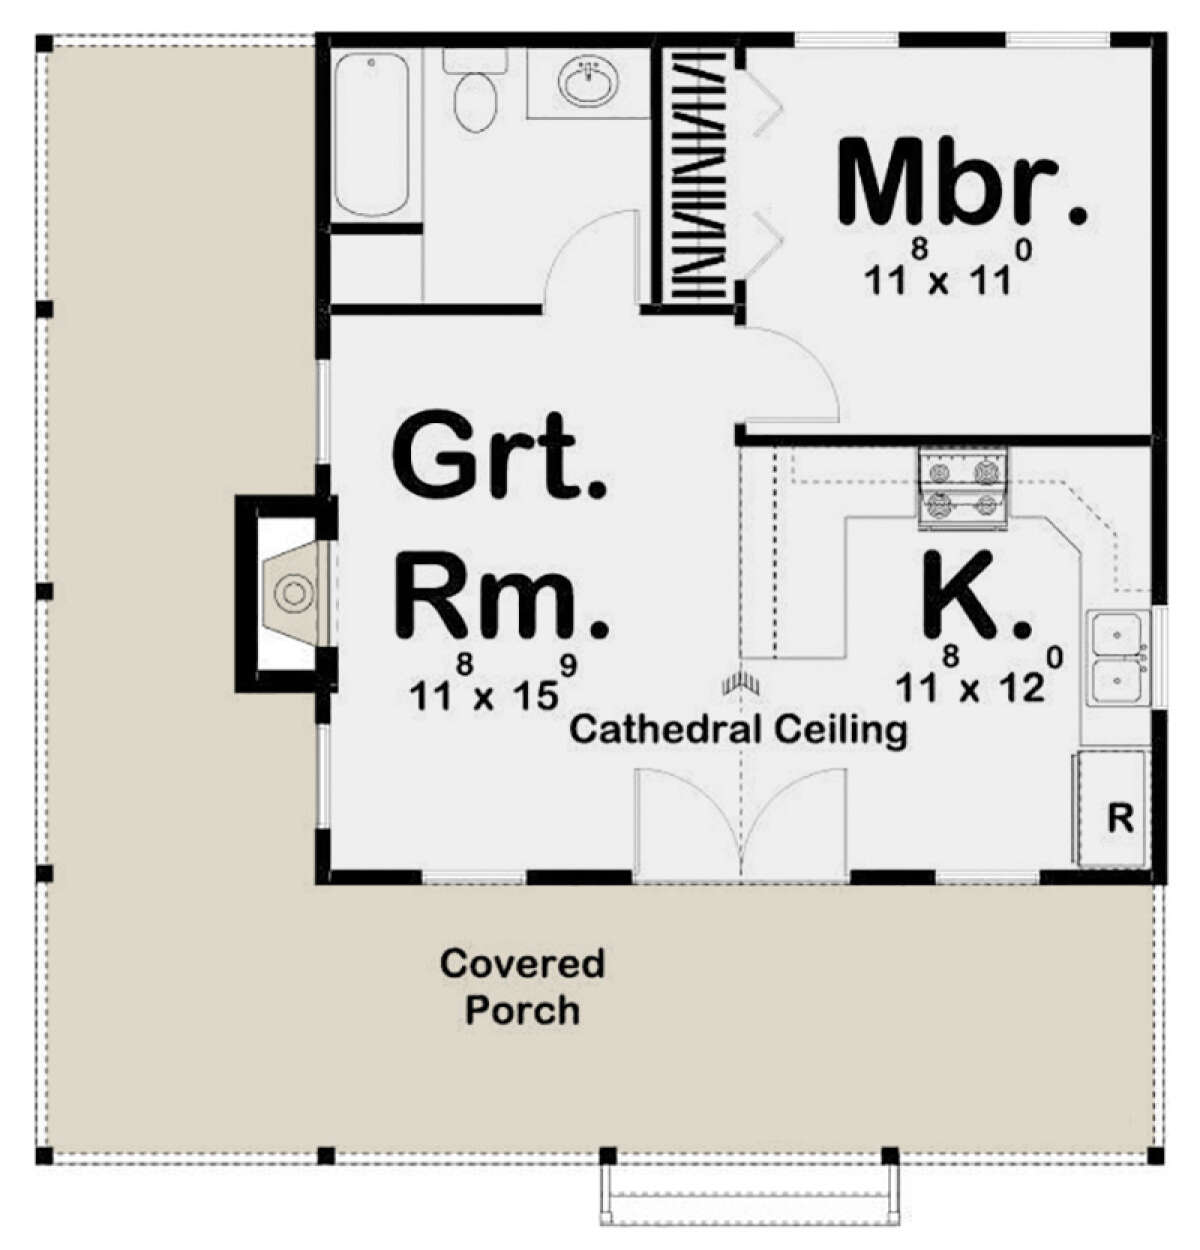 Aangenaam kennis te maken Huis opvolger Cottage Plan: 576 Square Feet, 1 Bedroom, 1 Bathroom - 963-00203